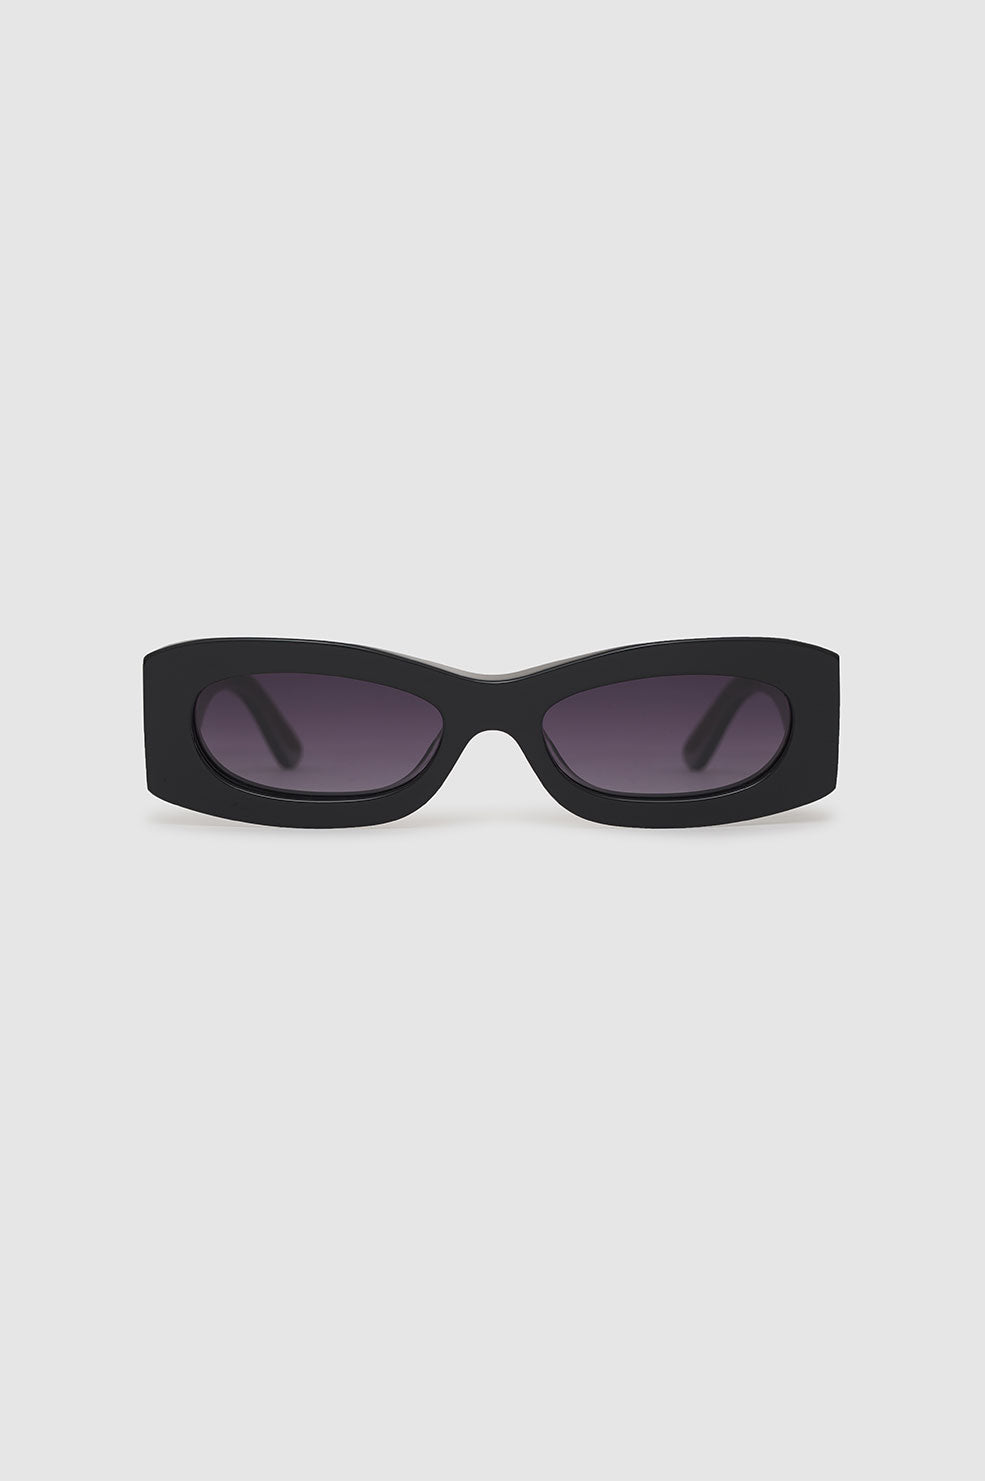 Malibu Sunglasses - Black